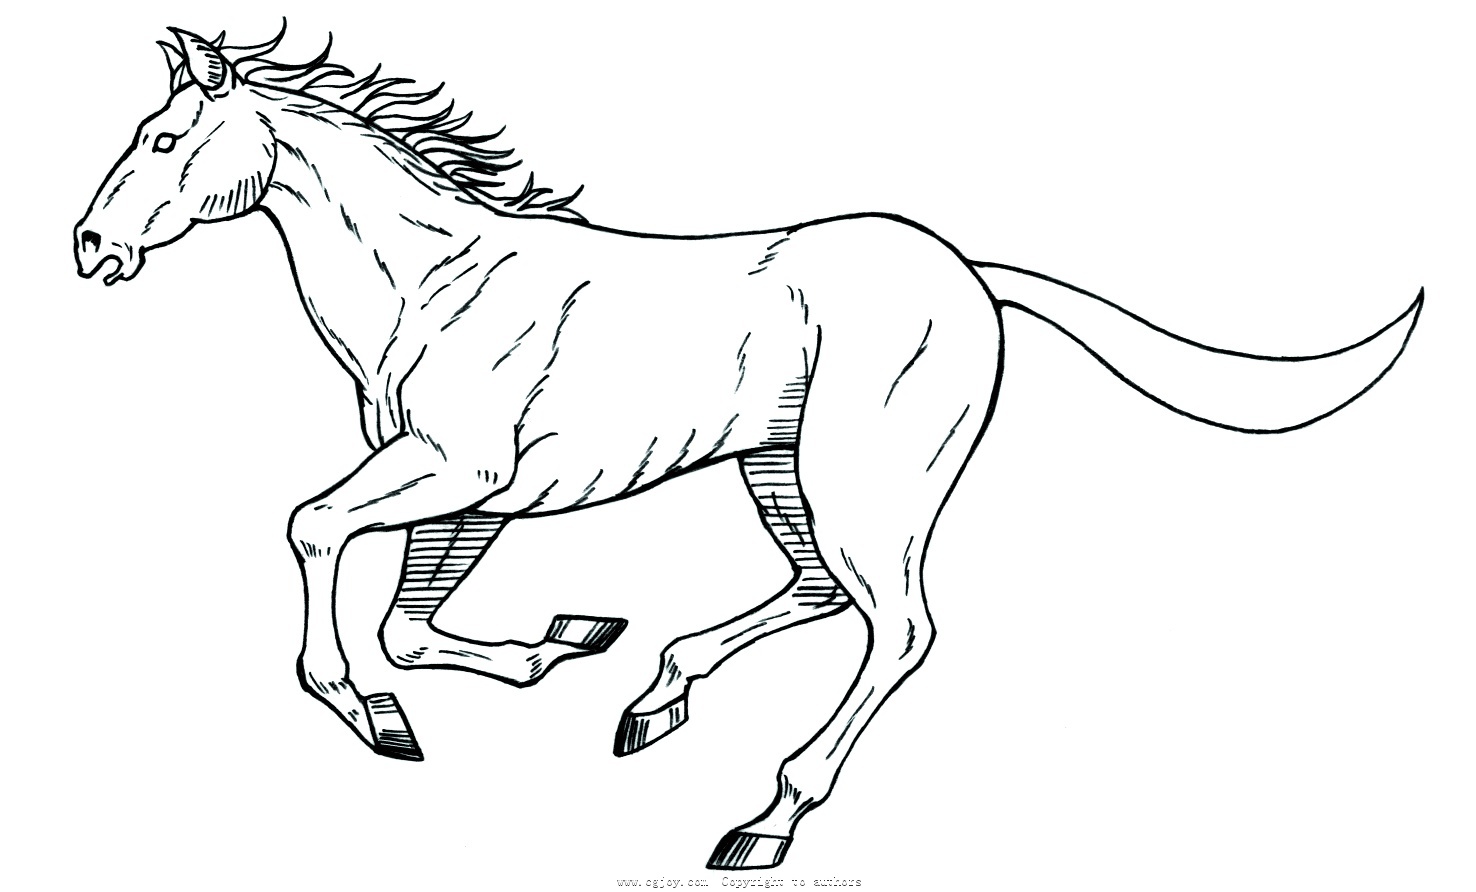 奔跑的马怎么画一匹图片